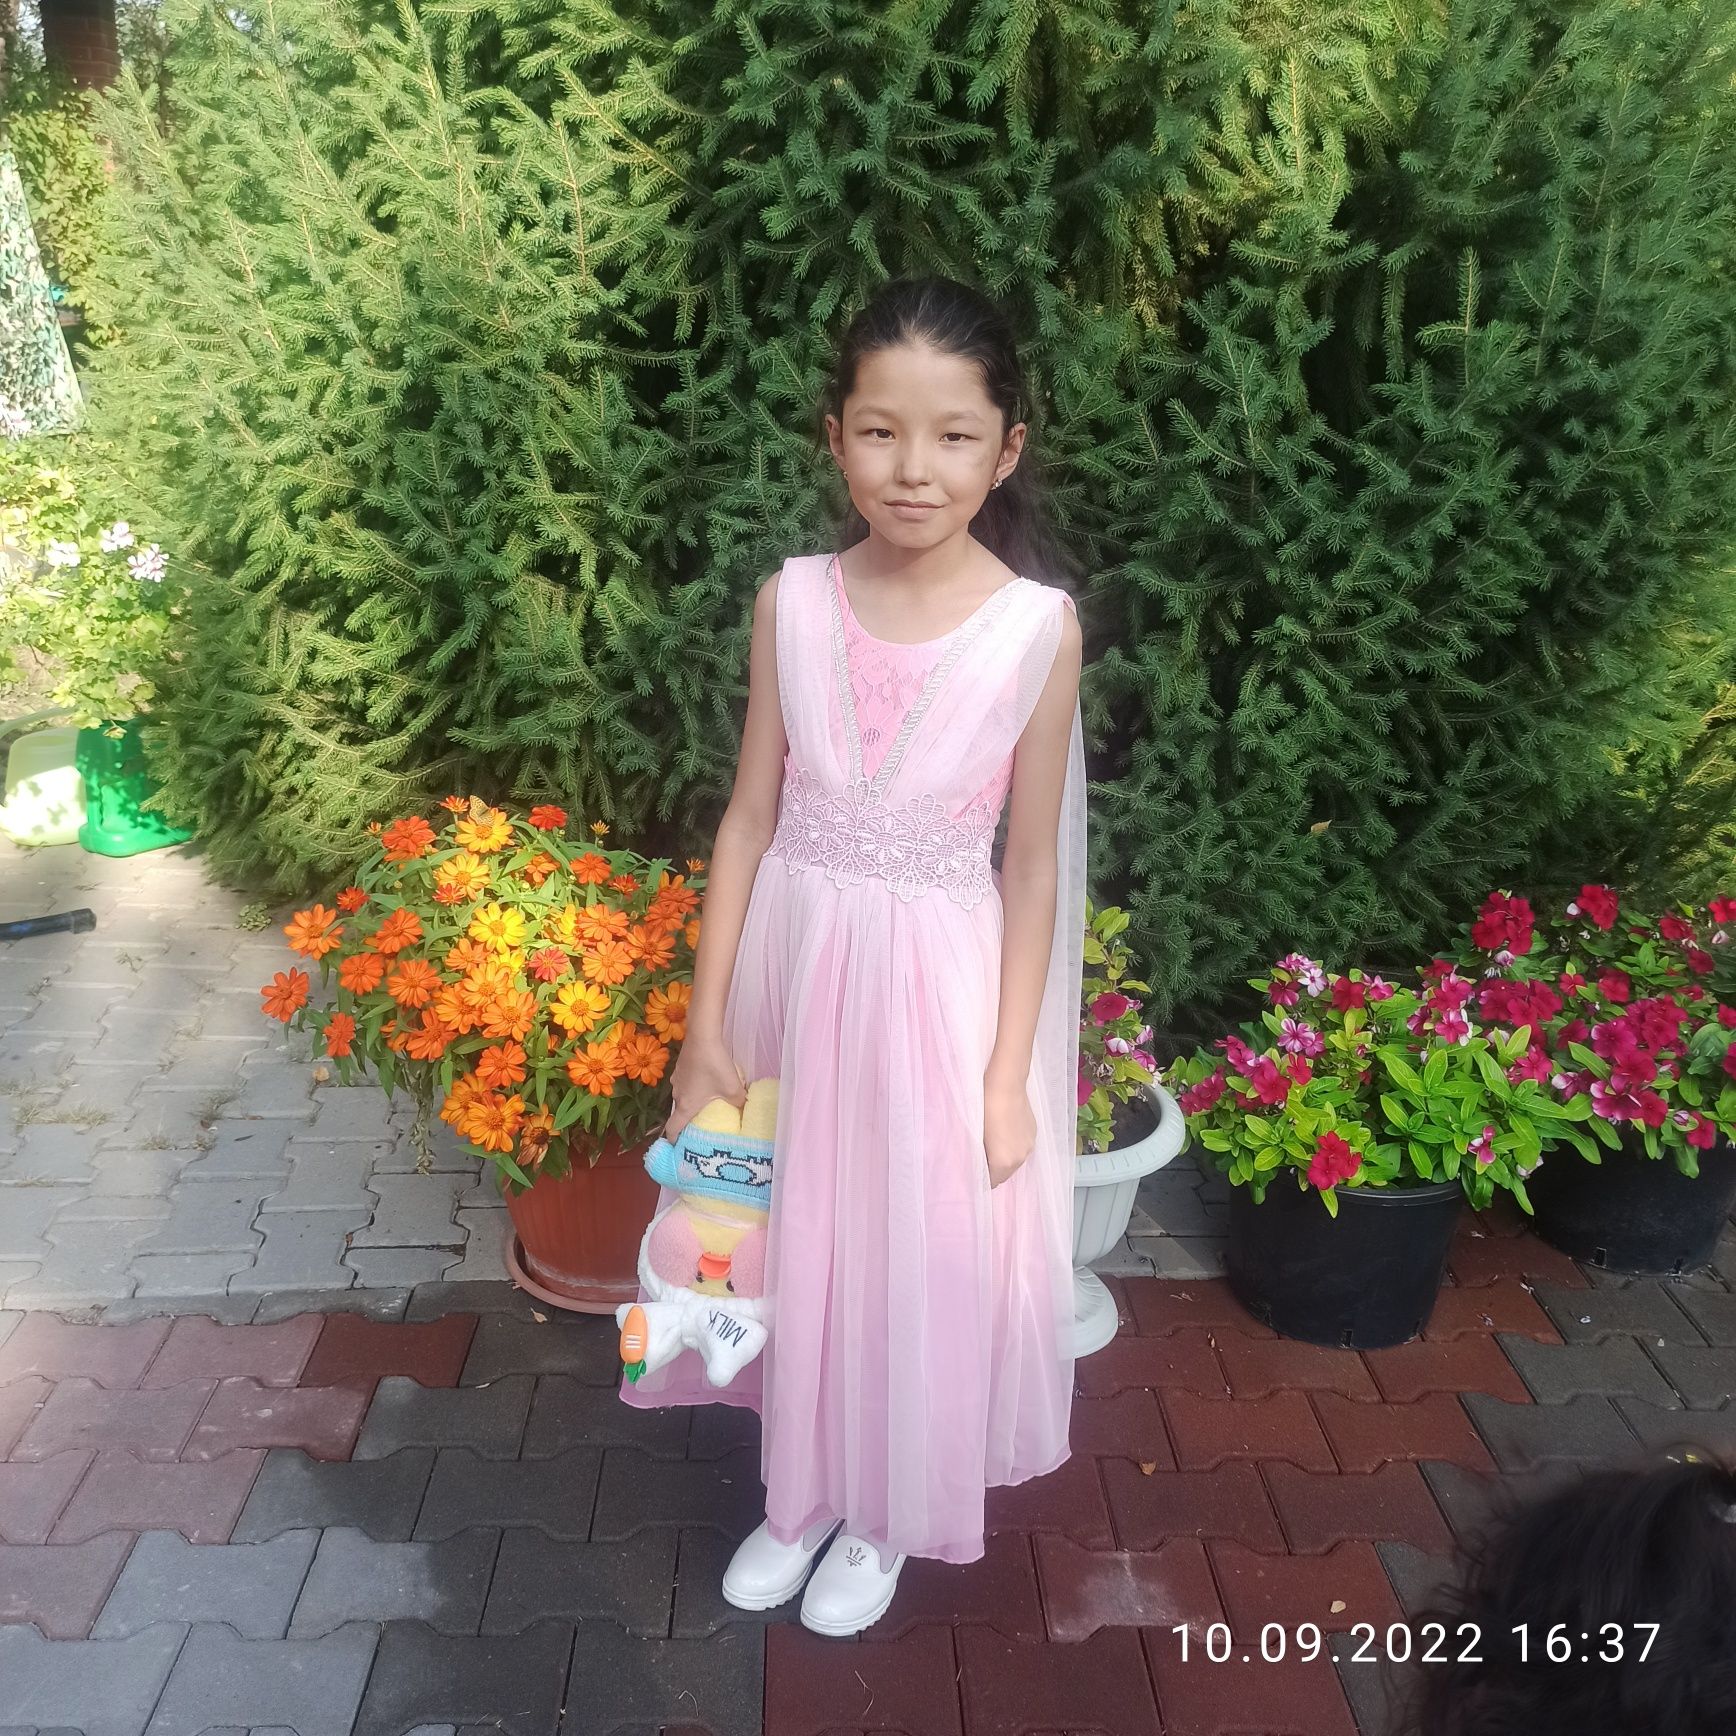 Платье на девочку 7-8 лет